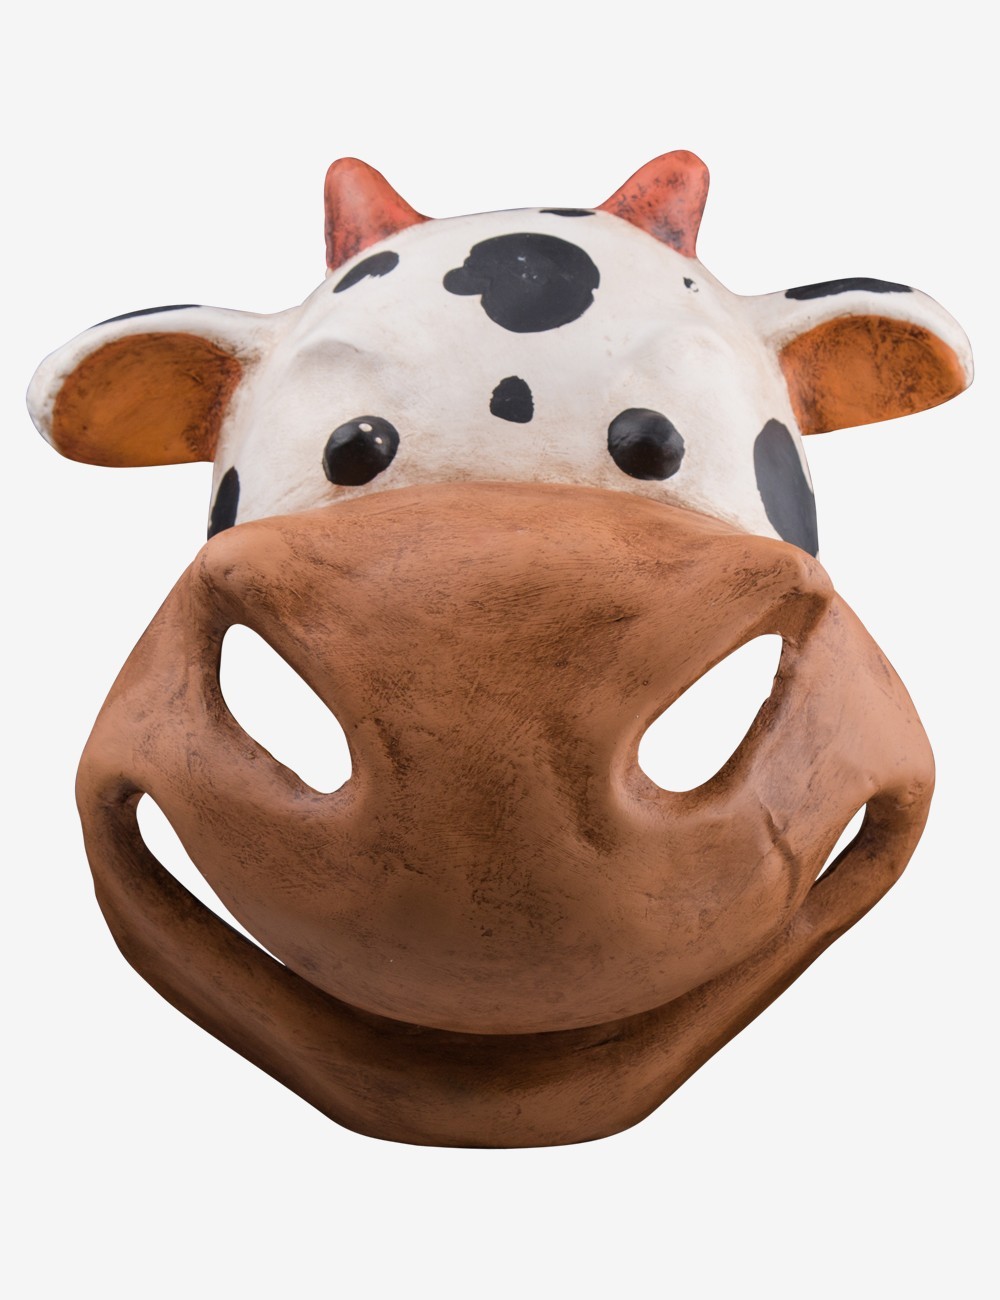 Masque vache enfant : Deguise-toi, achat de Masques